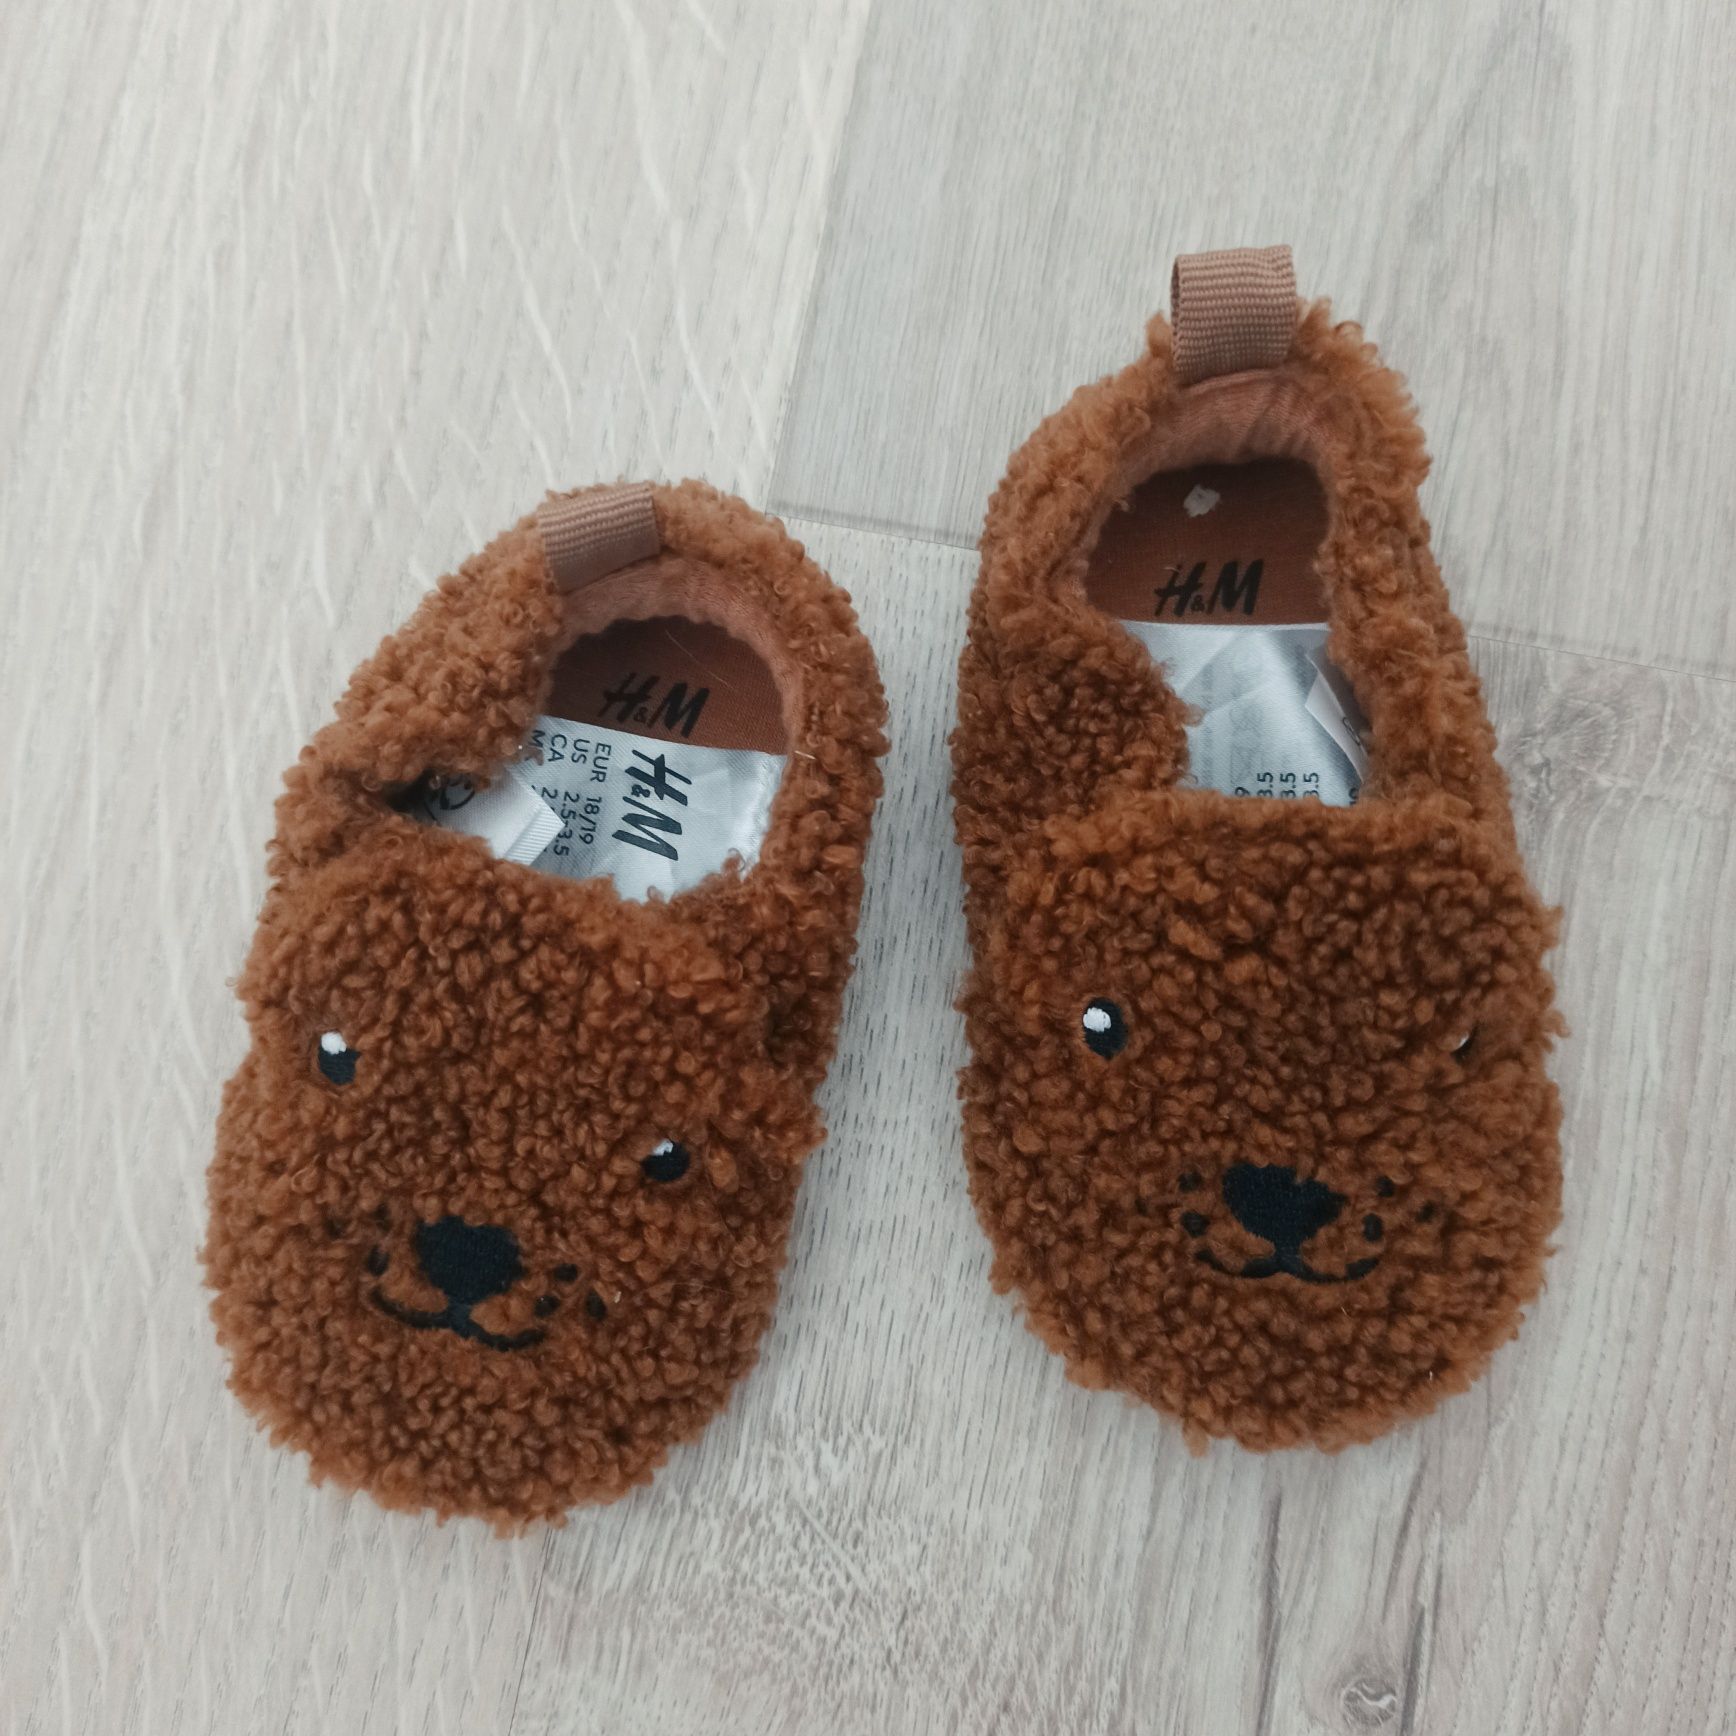 NOWE nieużywane buty kapcie niemowlęce misie brązowe H&M 18/19 6-12ms